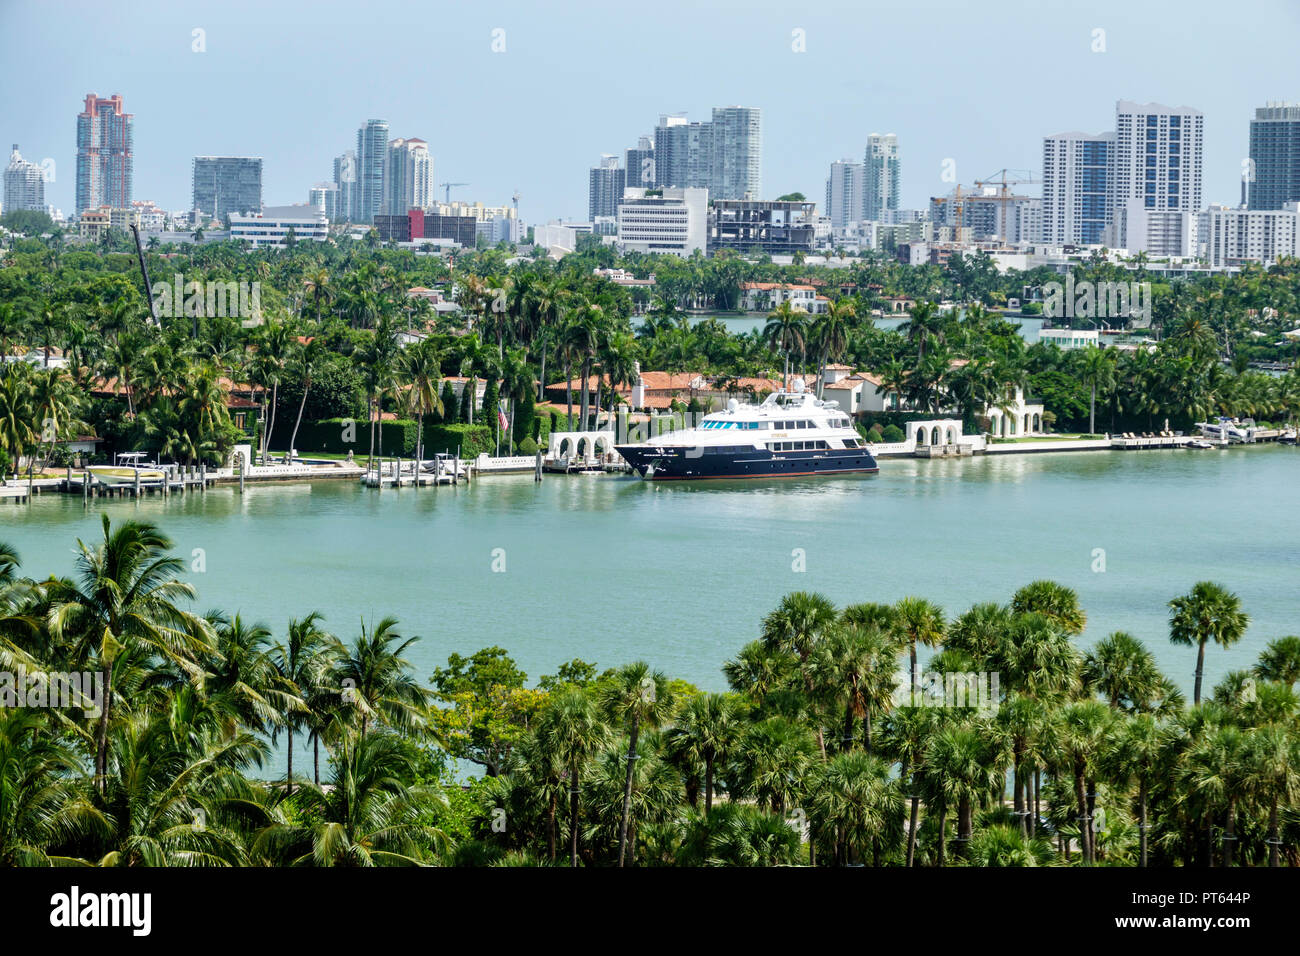 Miami Beach, Florida, Biscayne Bay, Häuser am Wasser, Skyline der Stadt, Palmen, Luxus Super Mega Yacht, FL180731250 Stockfoto